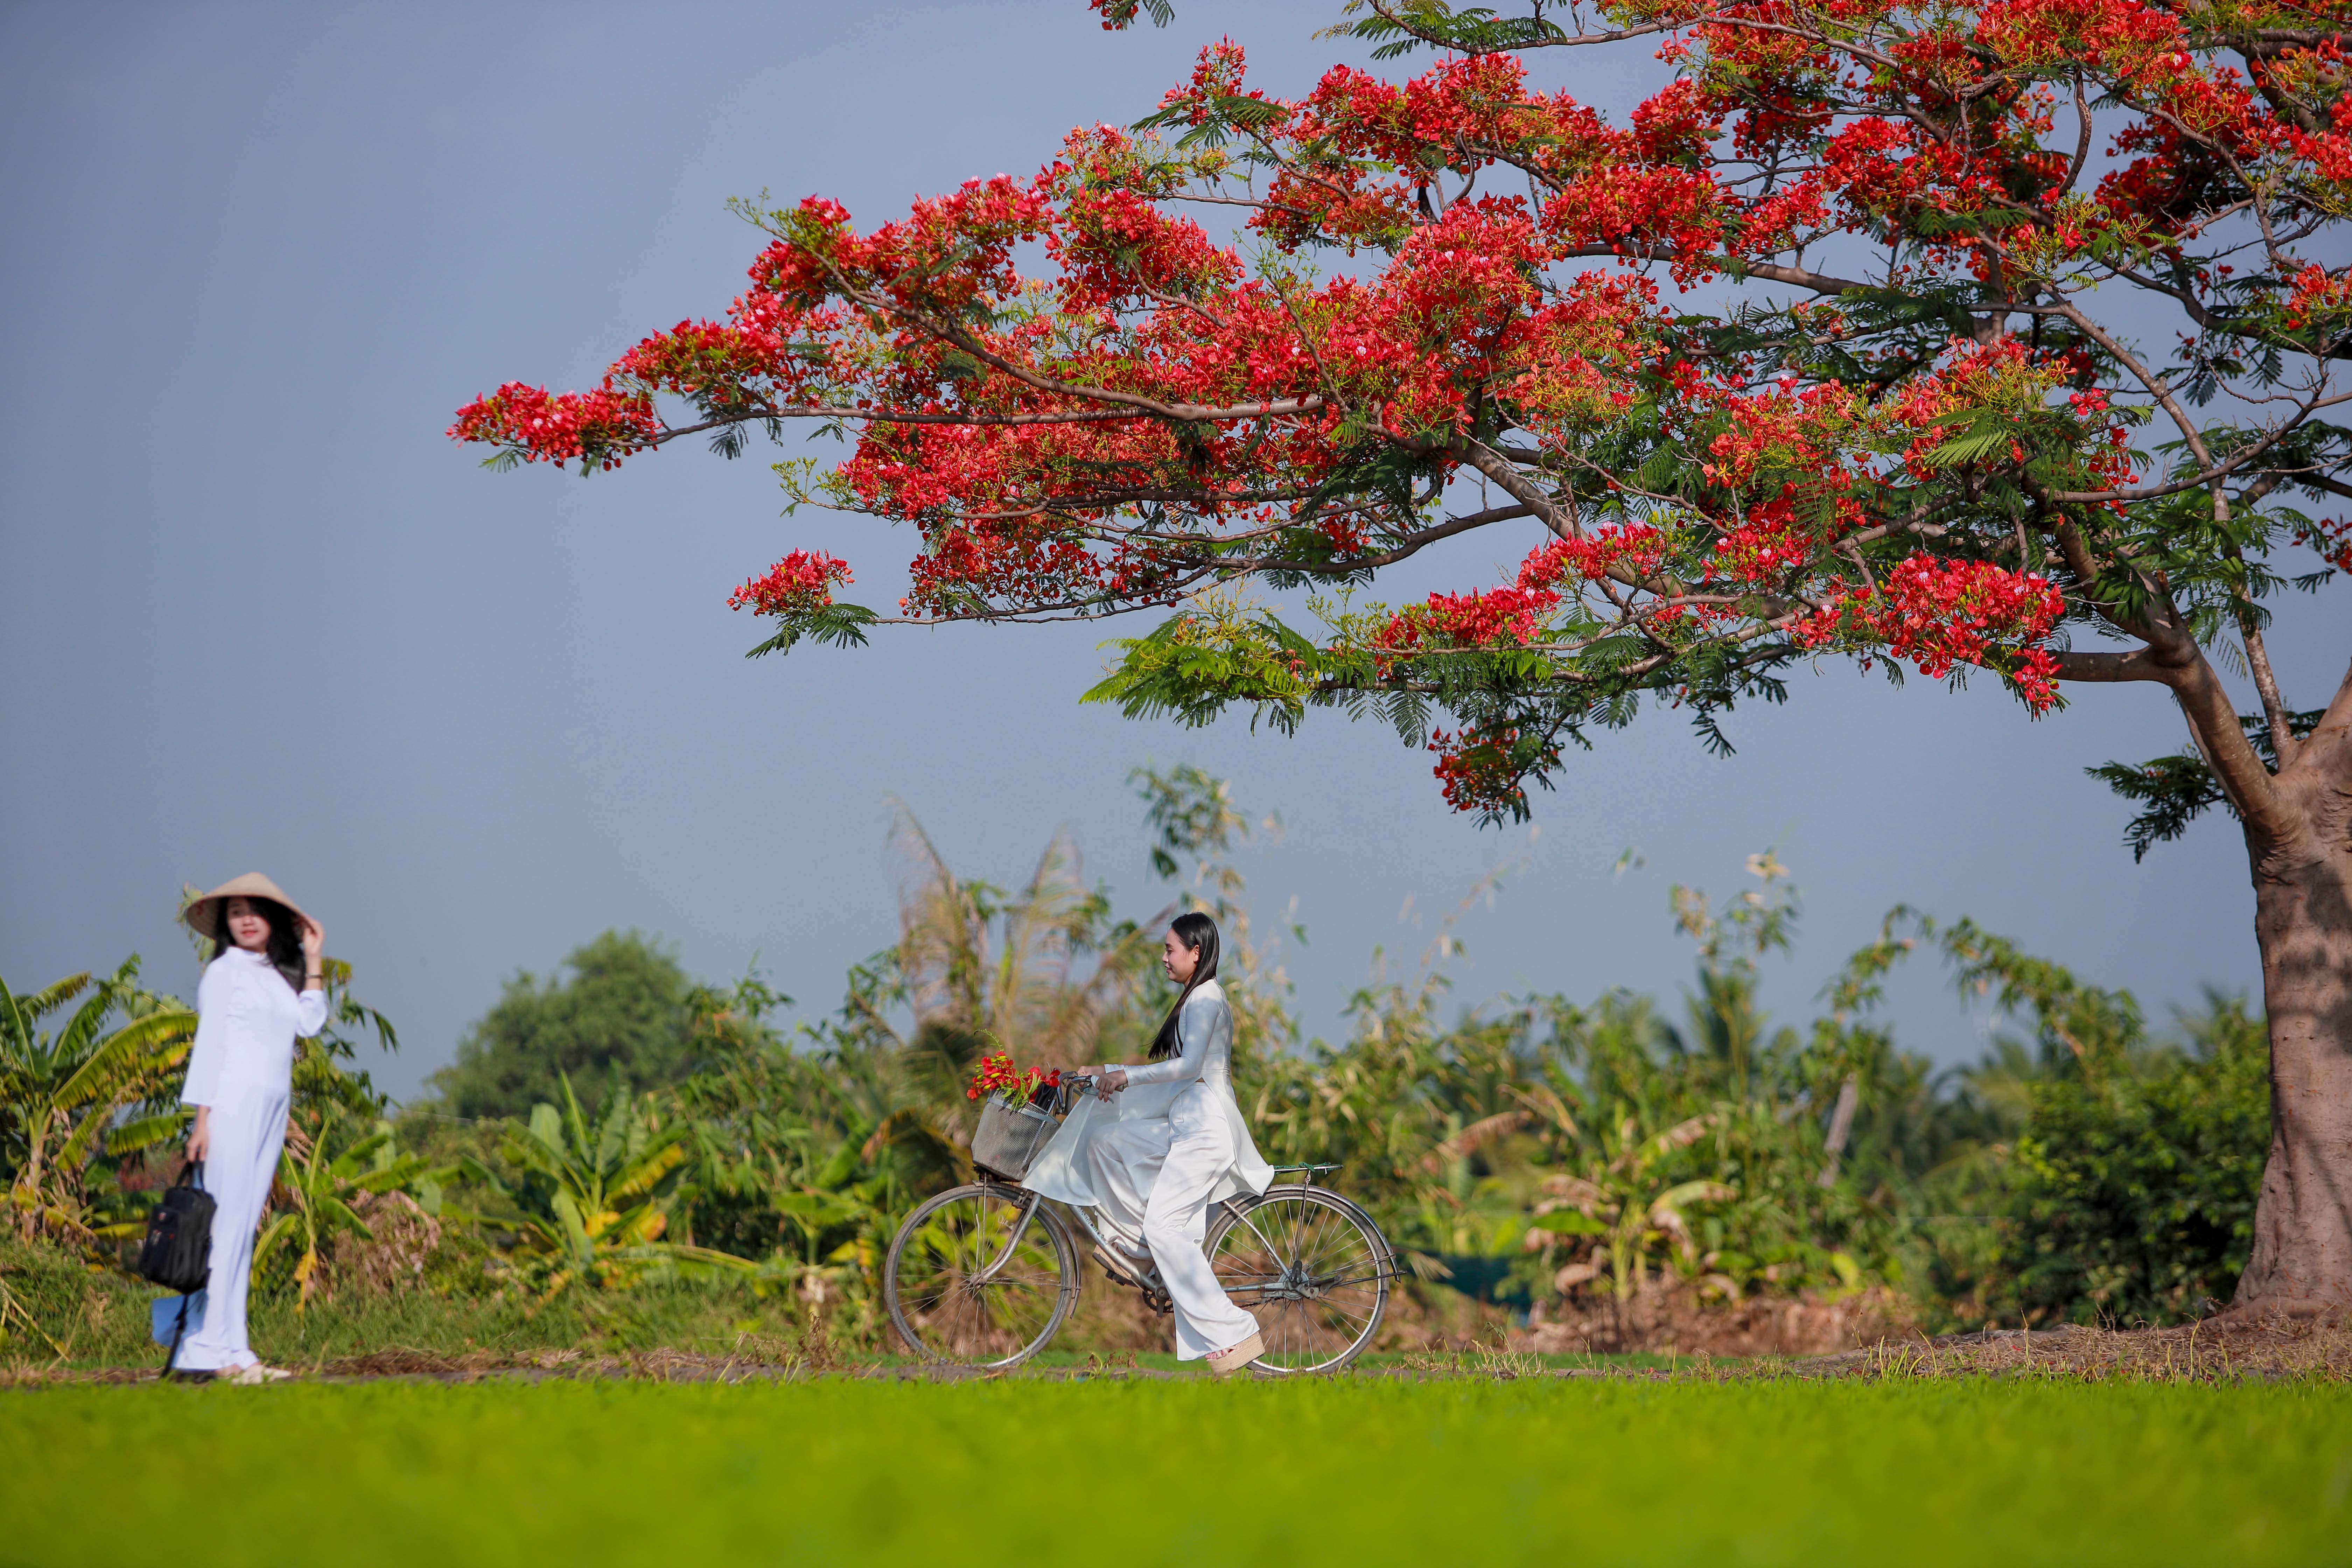 Người dân Sài Gòn ra đồng chụp ảnh với 'cây phượng cô đơn'